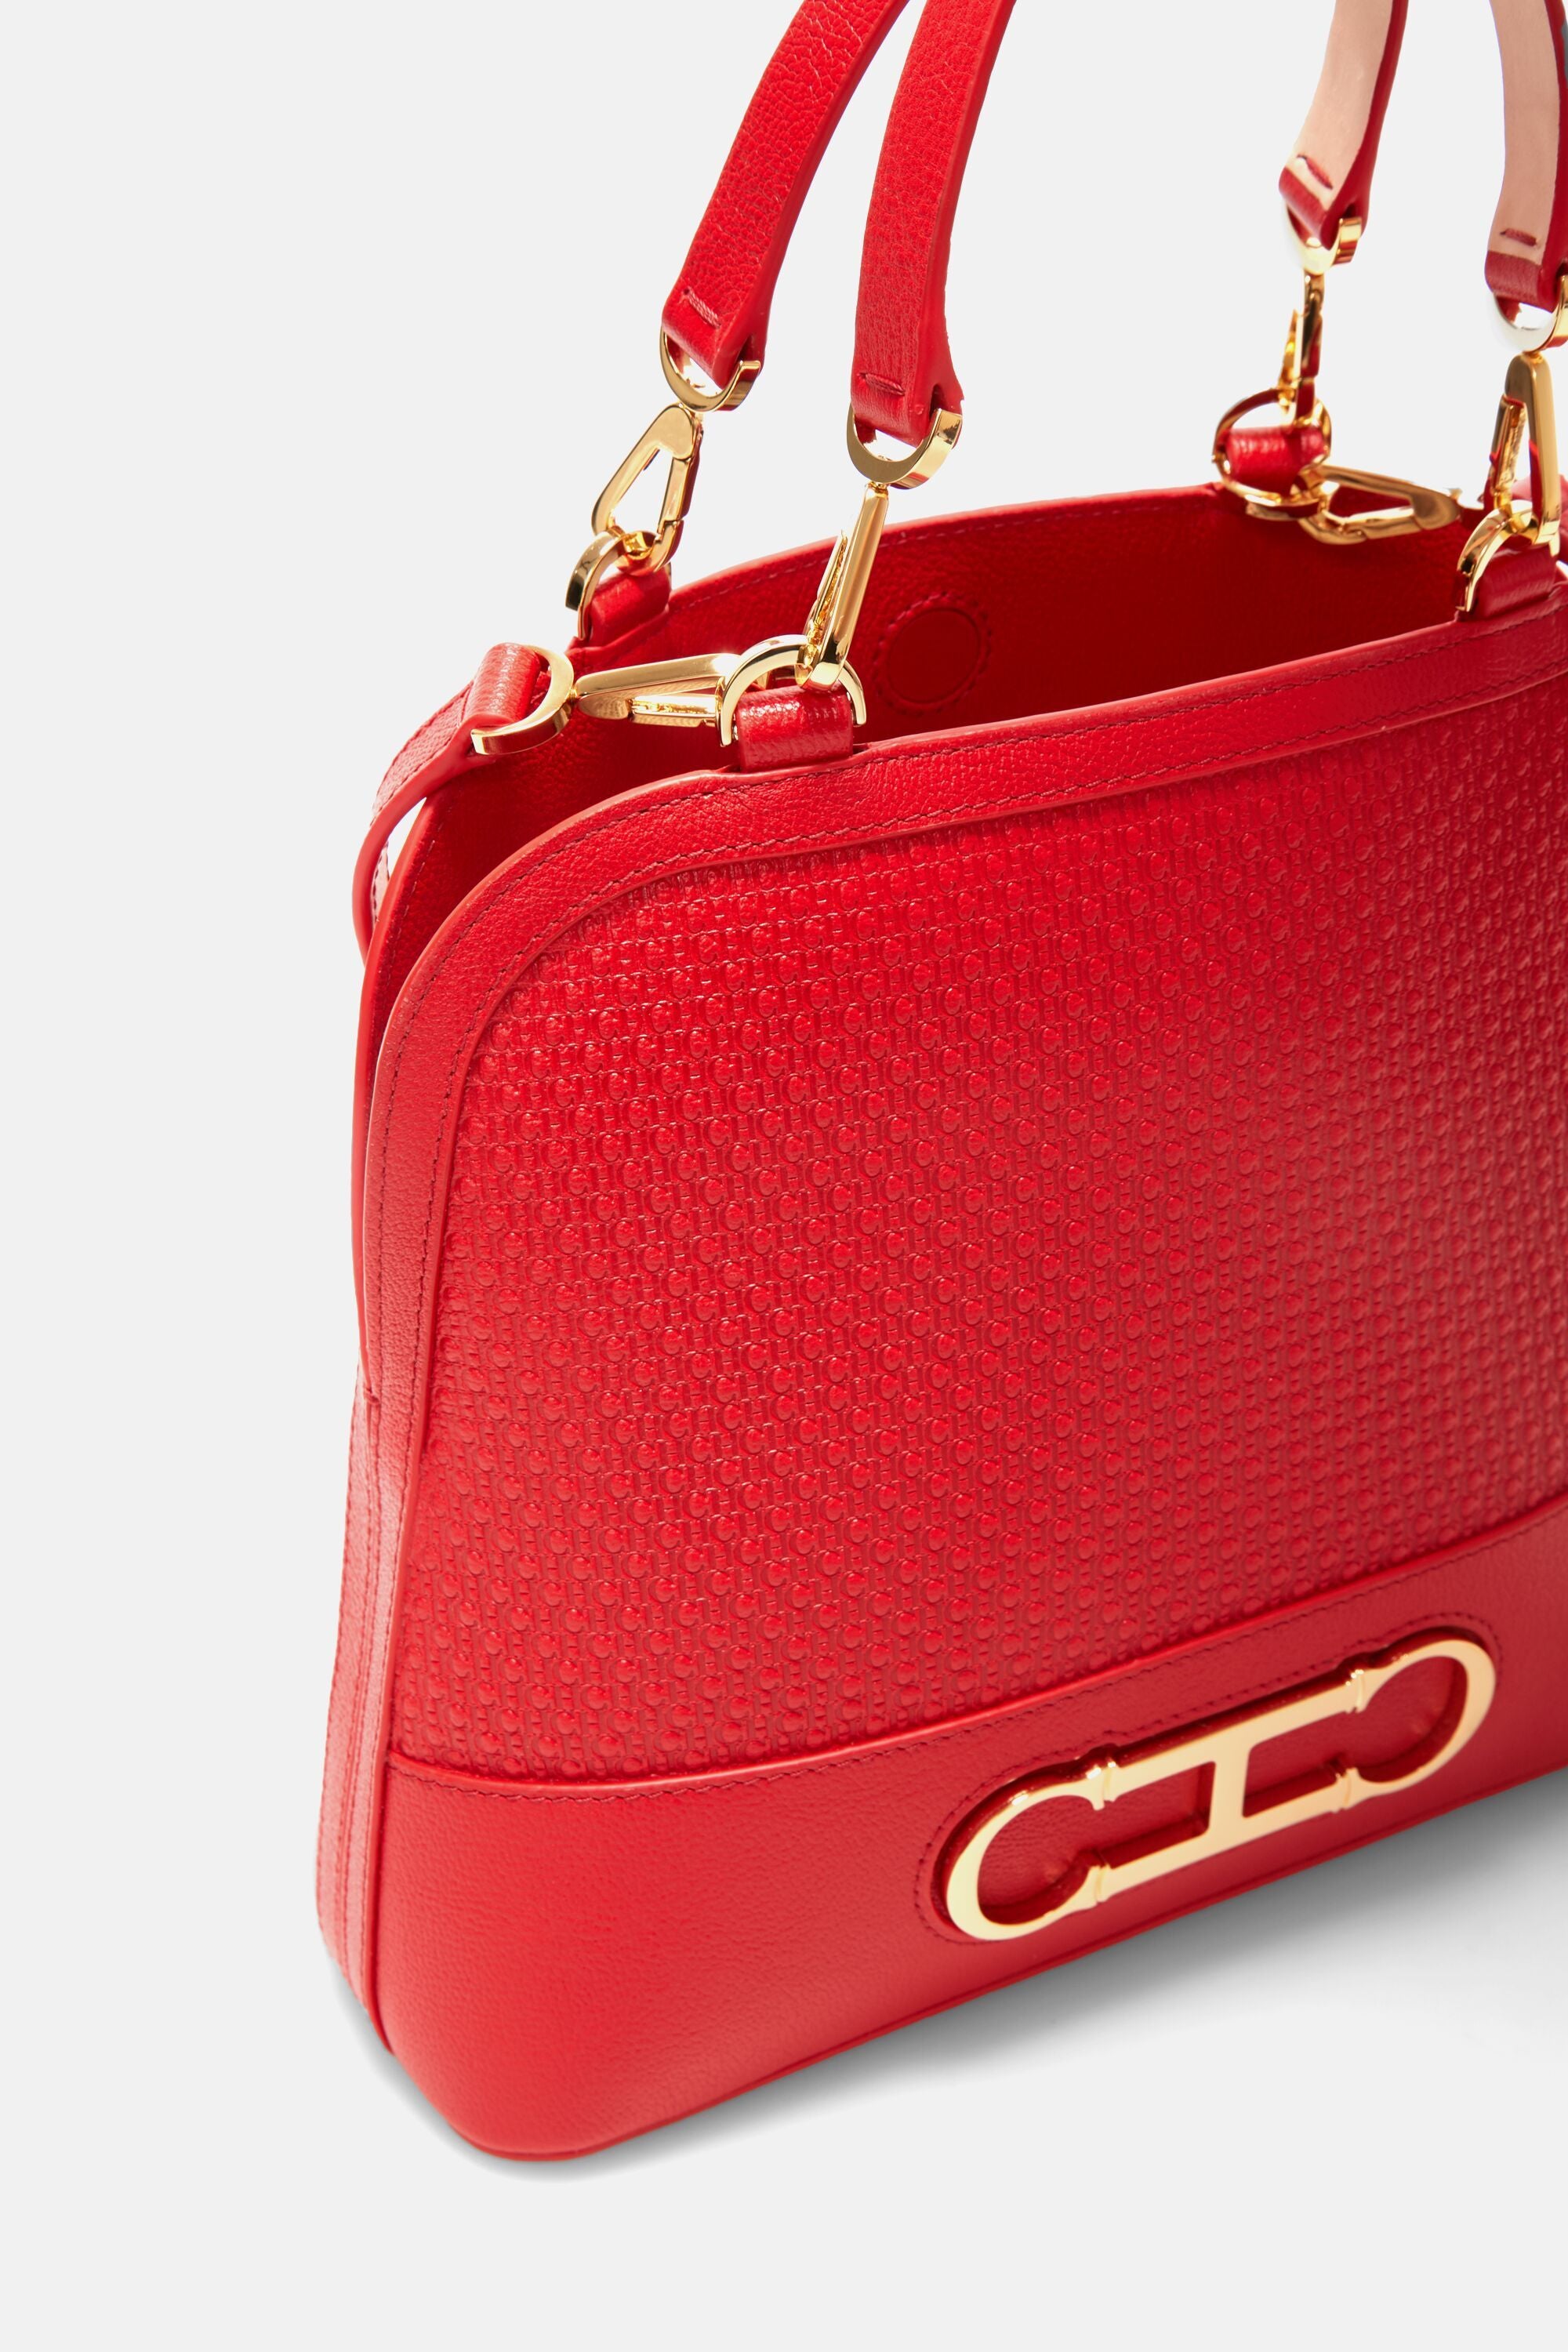 Initials Insignia Satchel  Medium handbag red - CH Carolina Herrera Italy